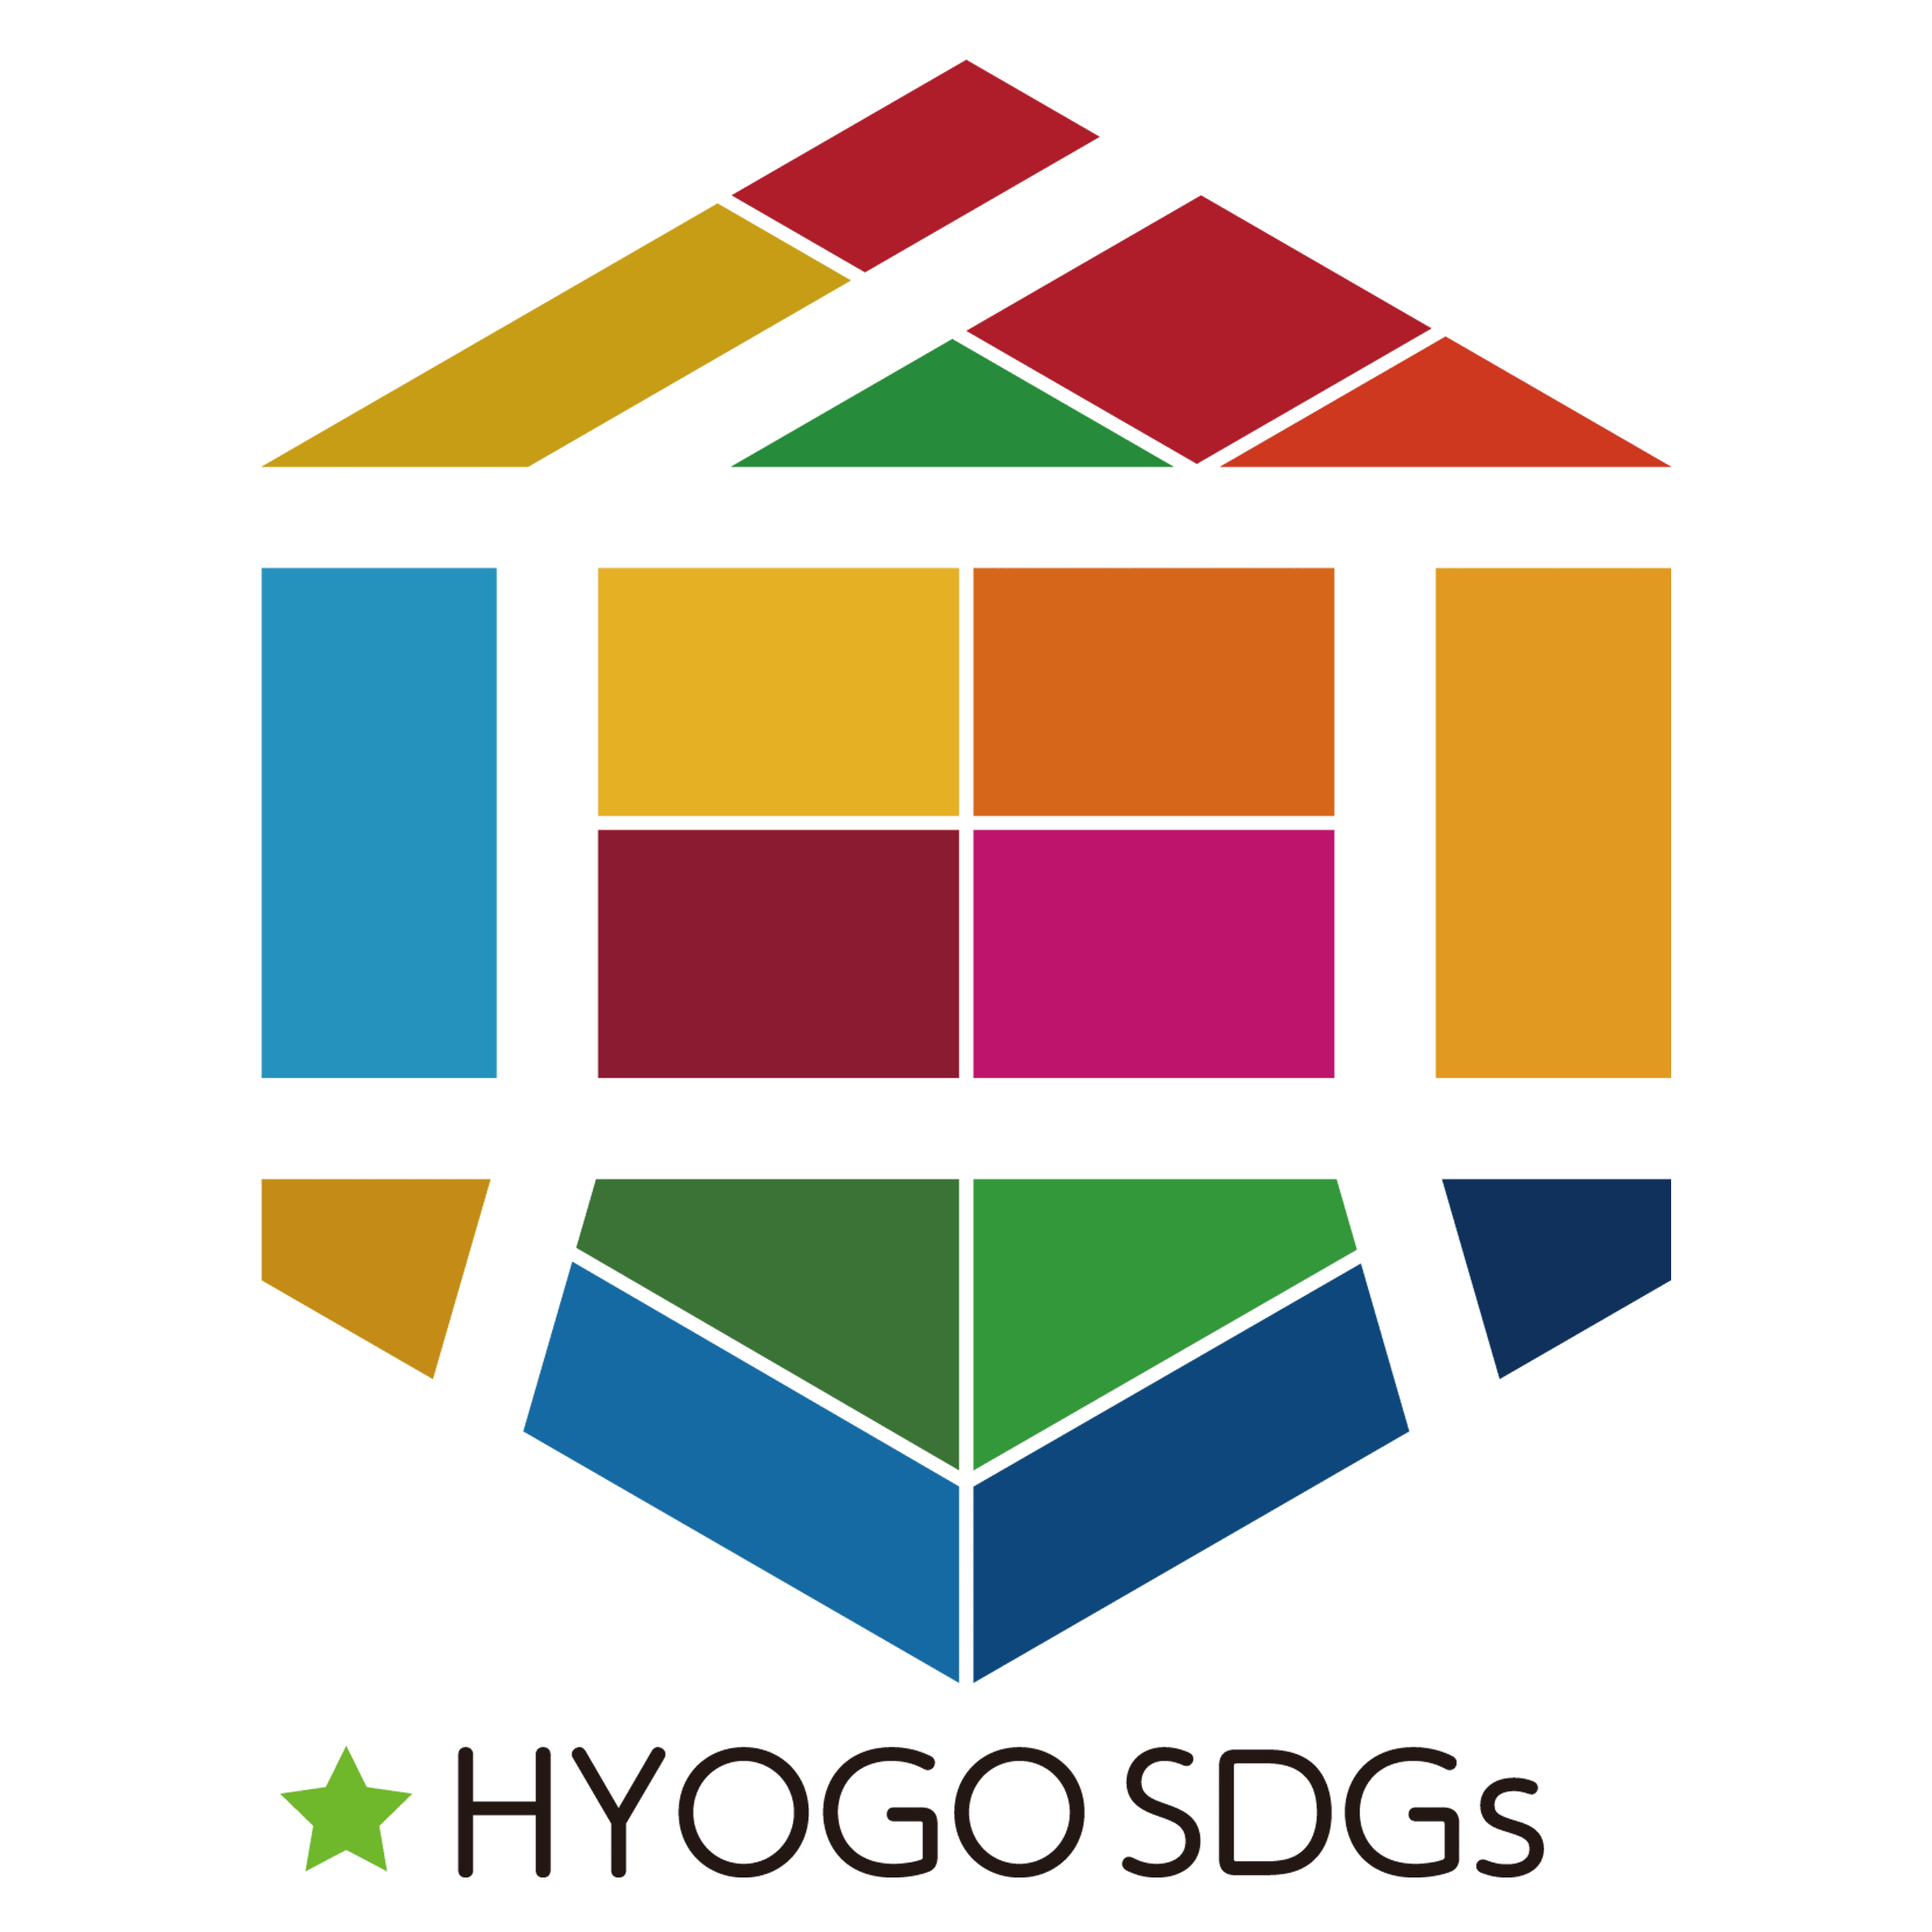 中小企業のためのひょうご産業SDGs推進宣言事業に認定ロゴ